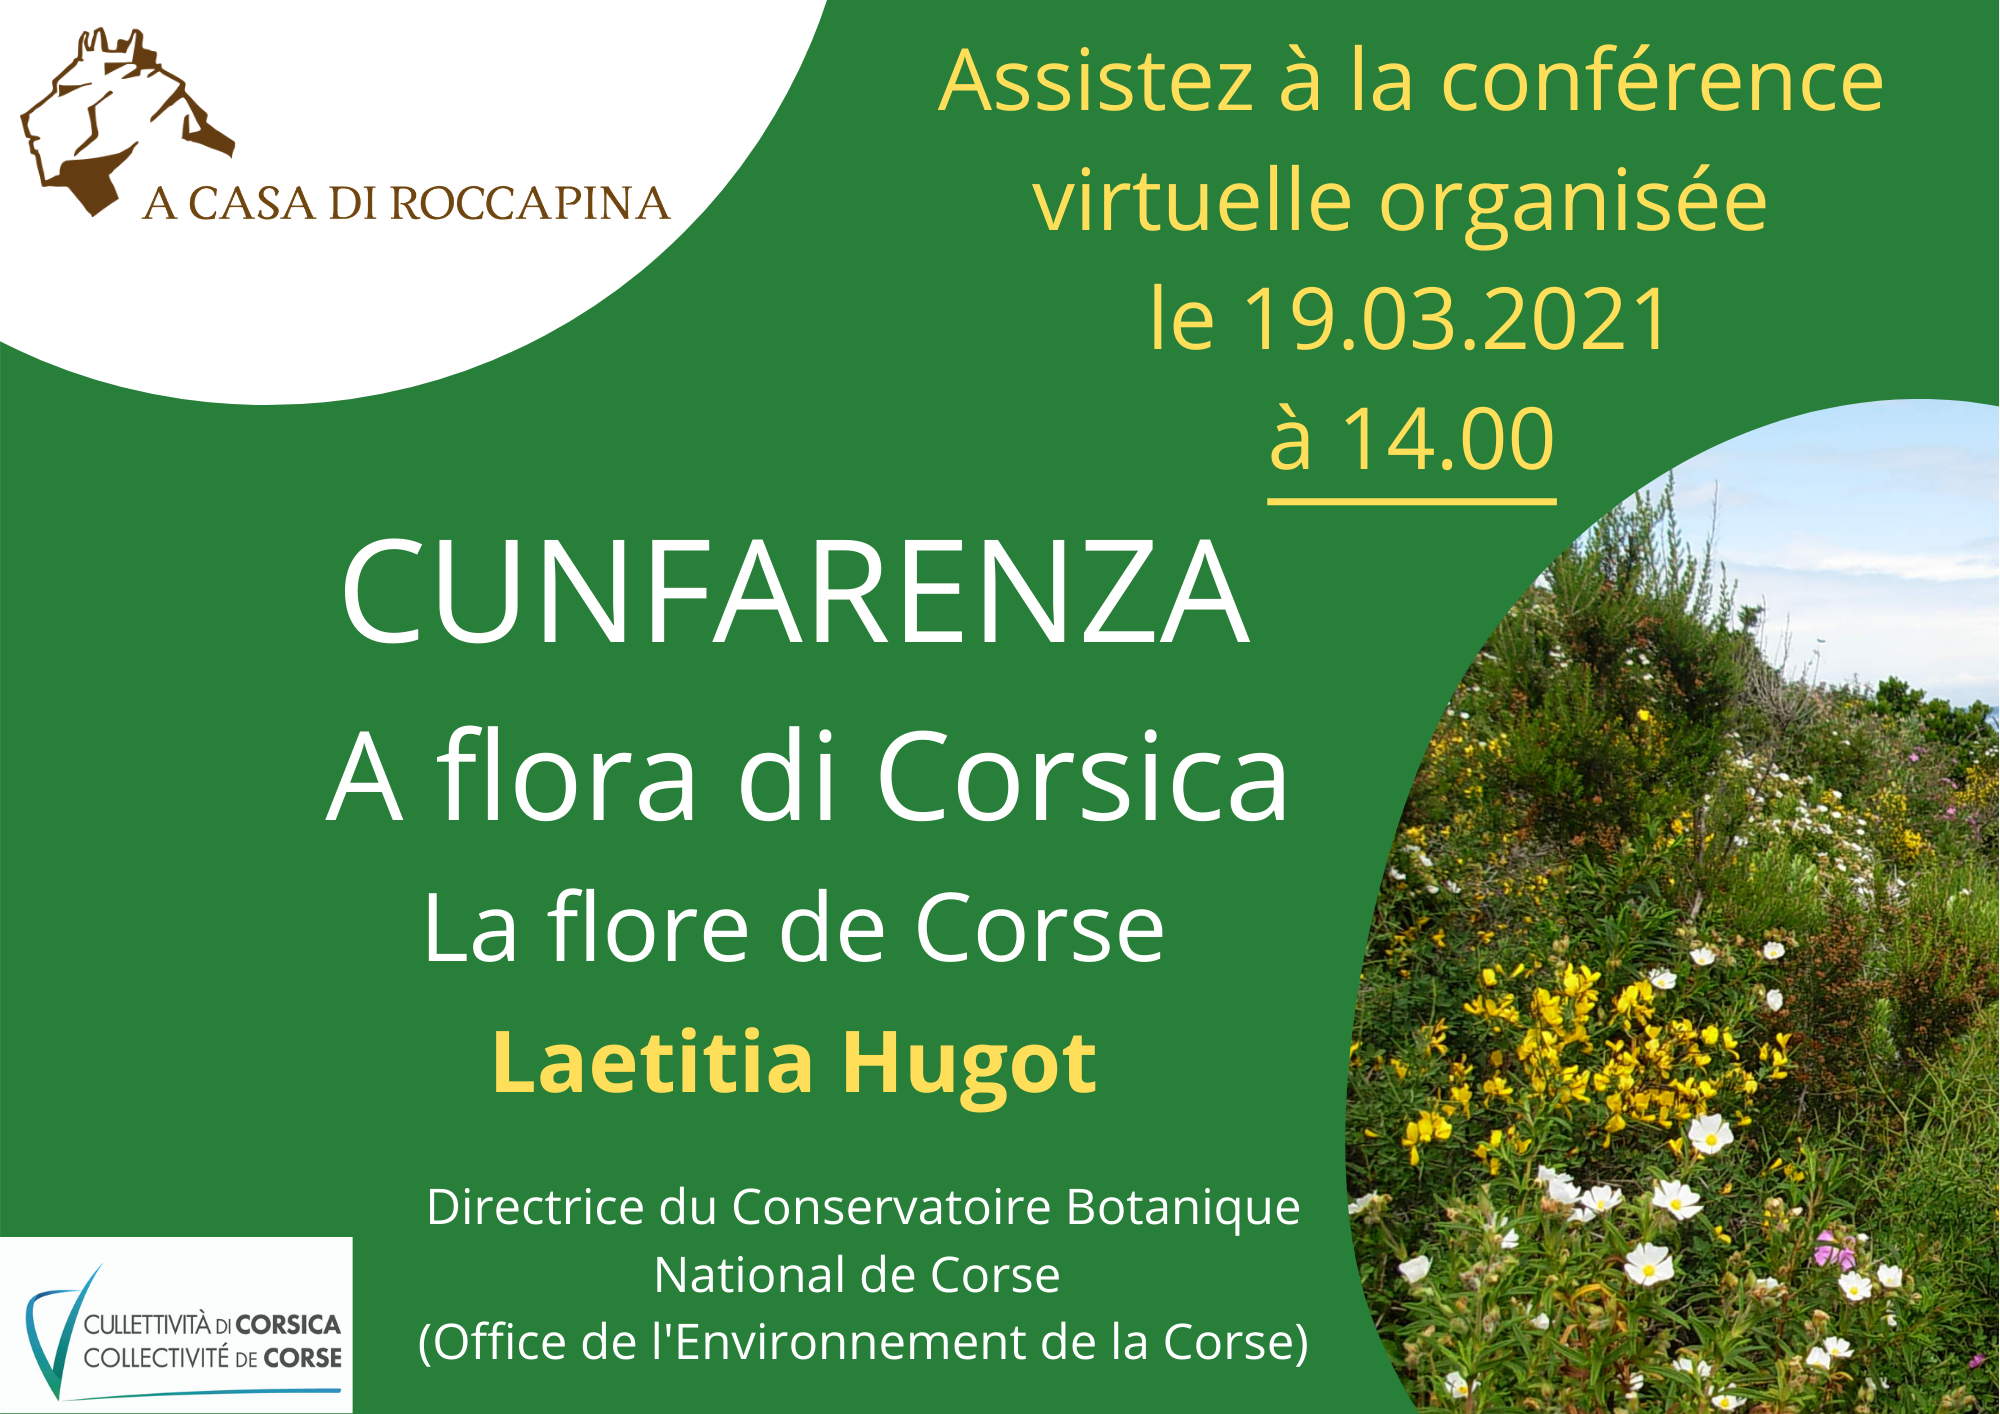 Cunfarenza : A flora di Corsica